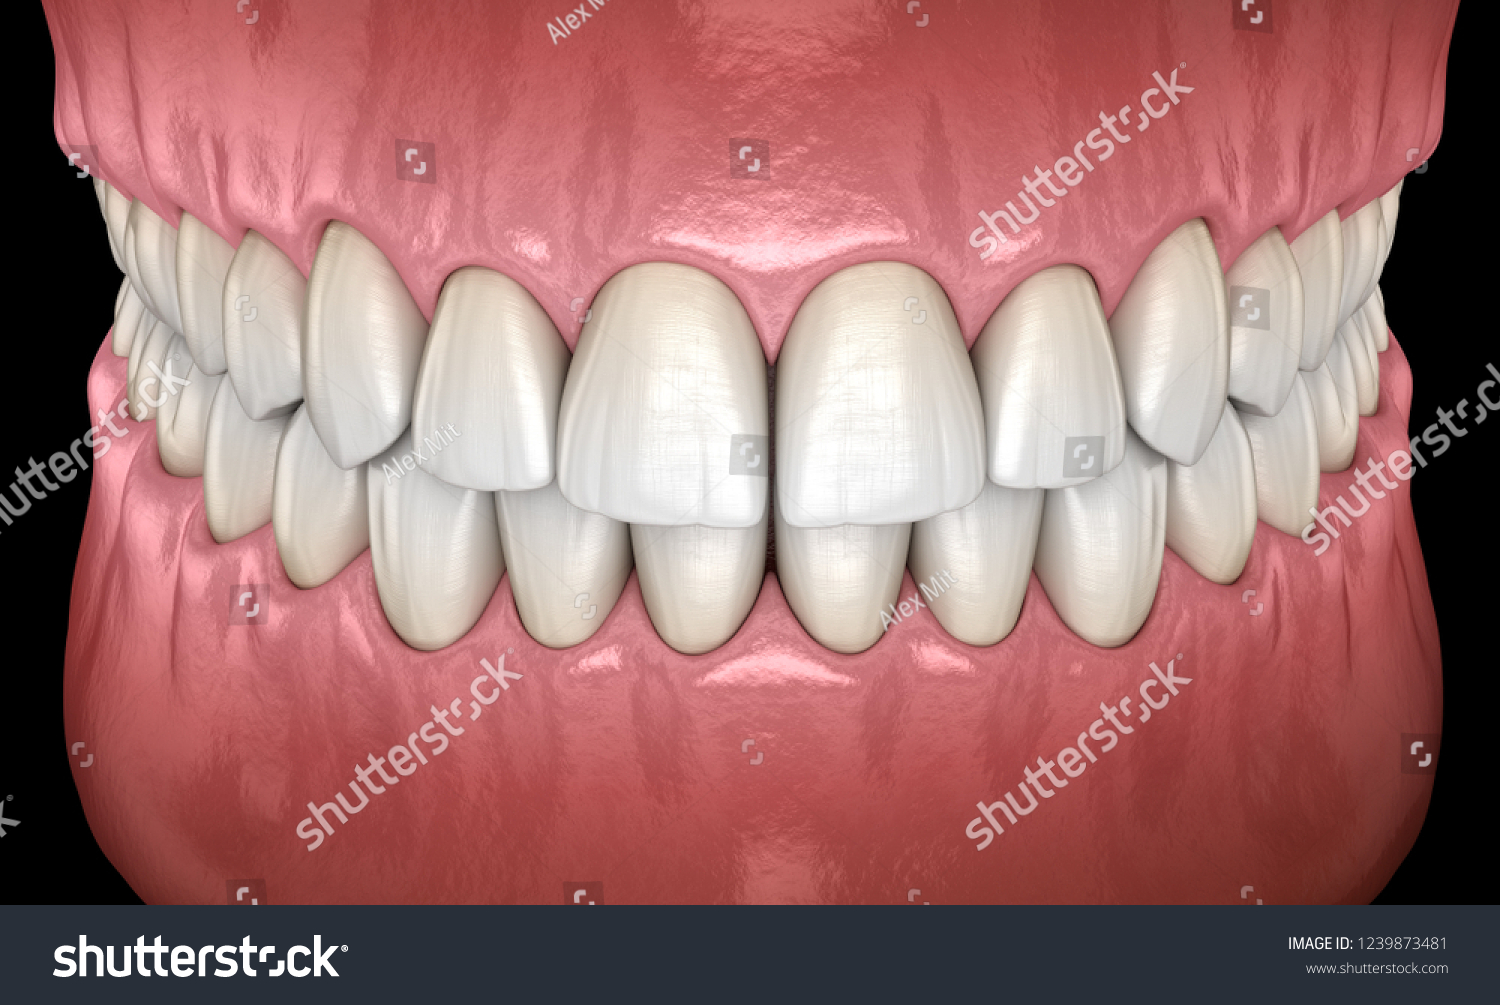 正常な咬合正面視を持つ健康な人間の歯 医学的に正確な歯の3dイラスト のイラスト素材